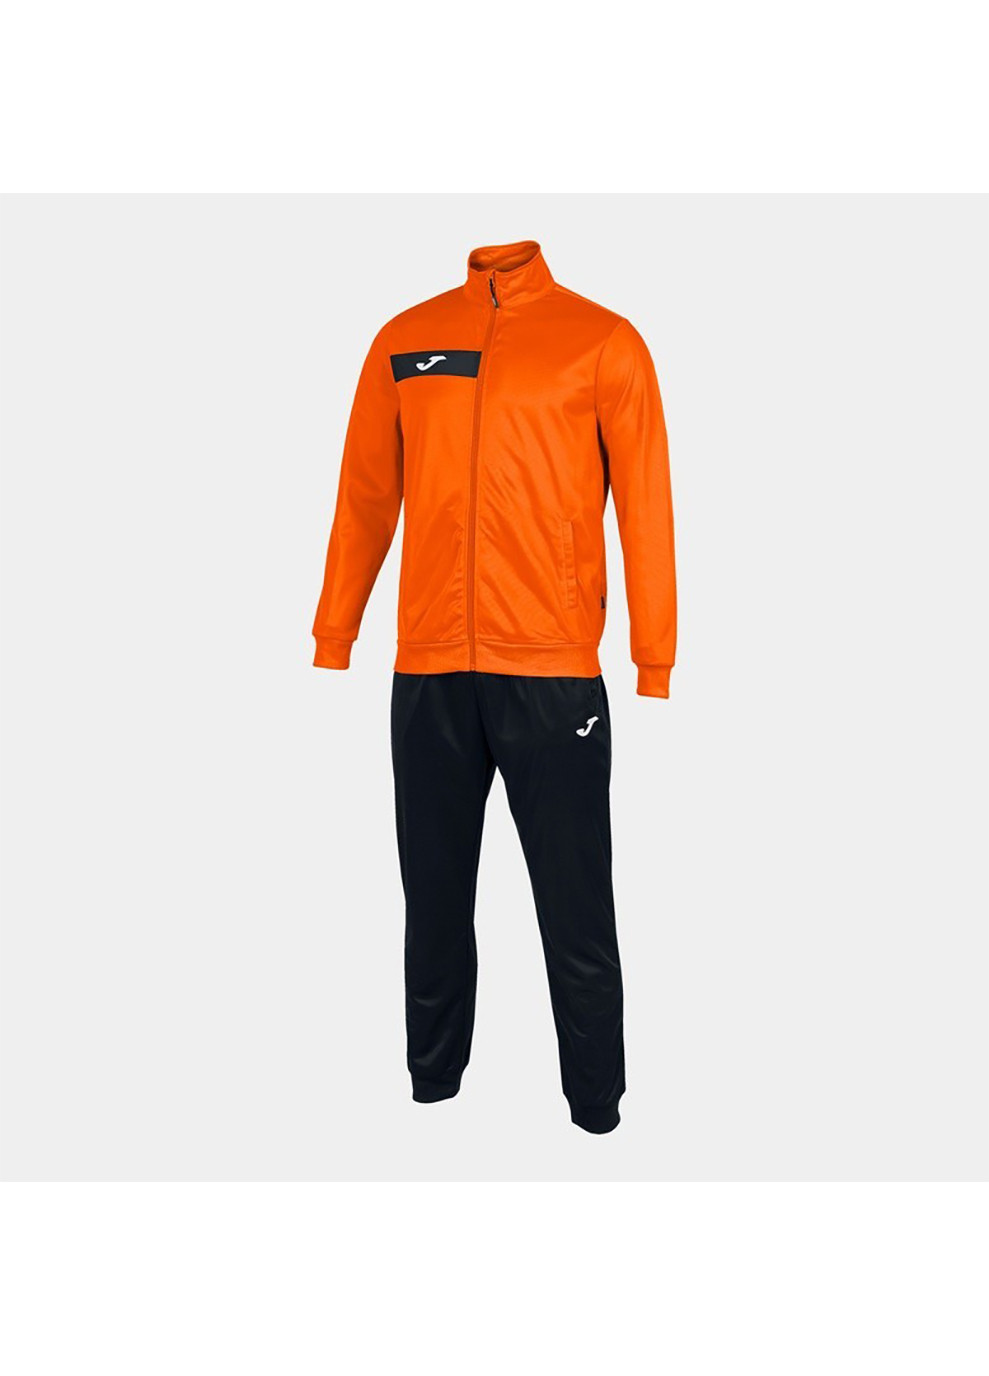 Мужской спортивный костюм COLUMBUS TRACKSUIT оранжевый, черный Joma (260633973)